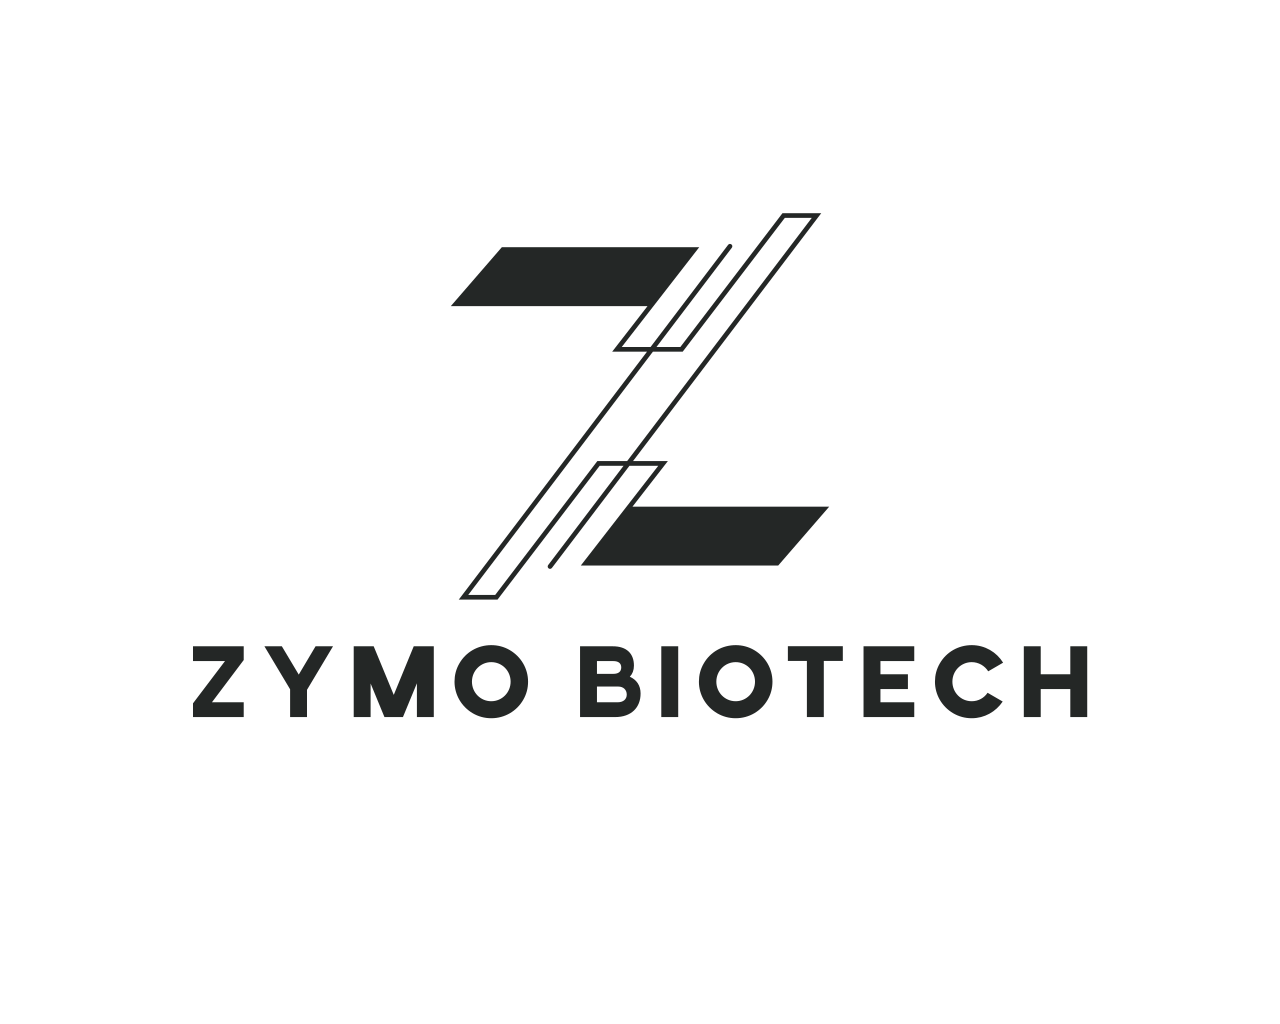 Zymo Biotech